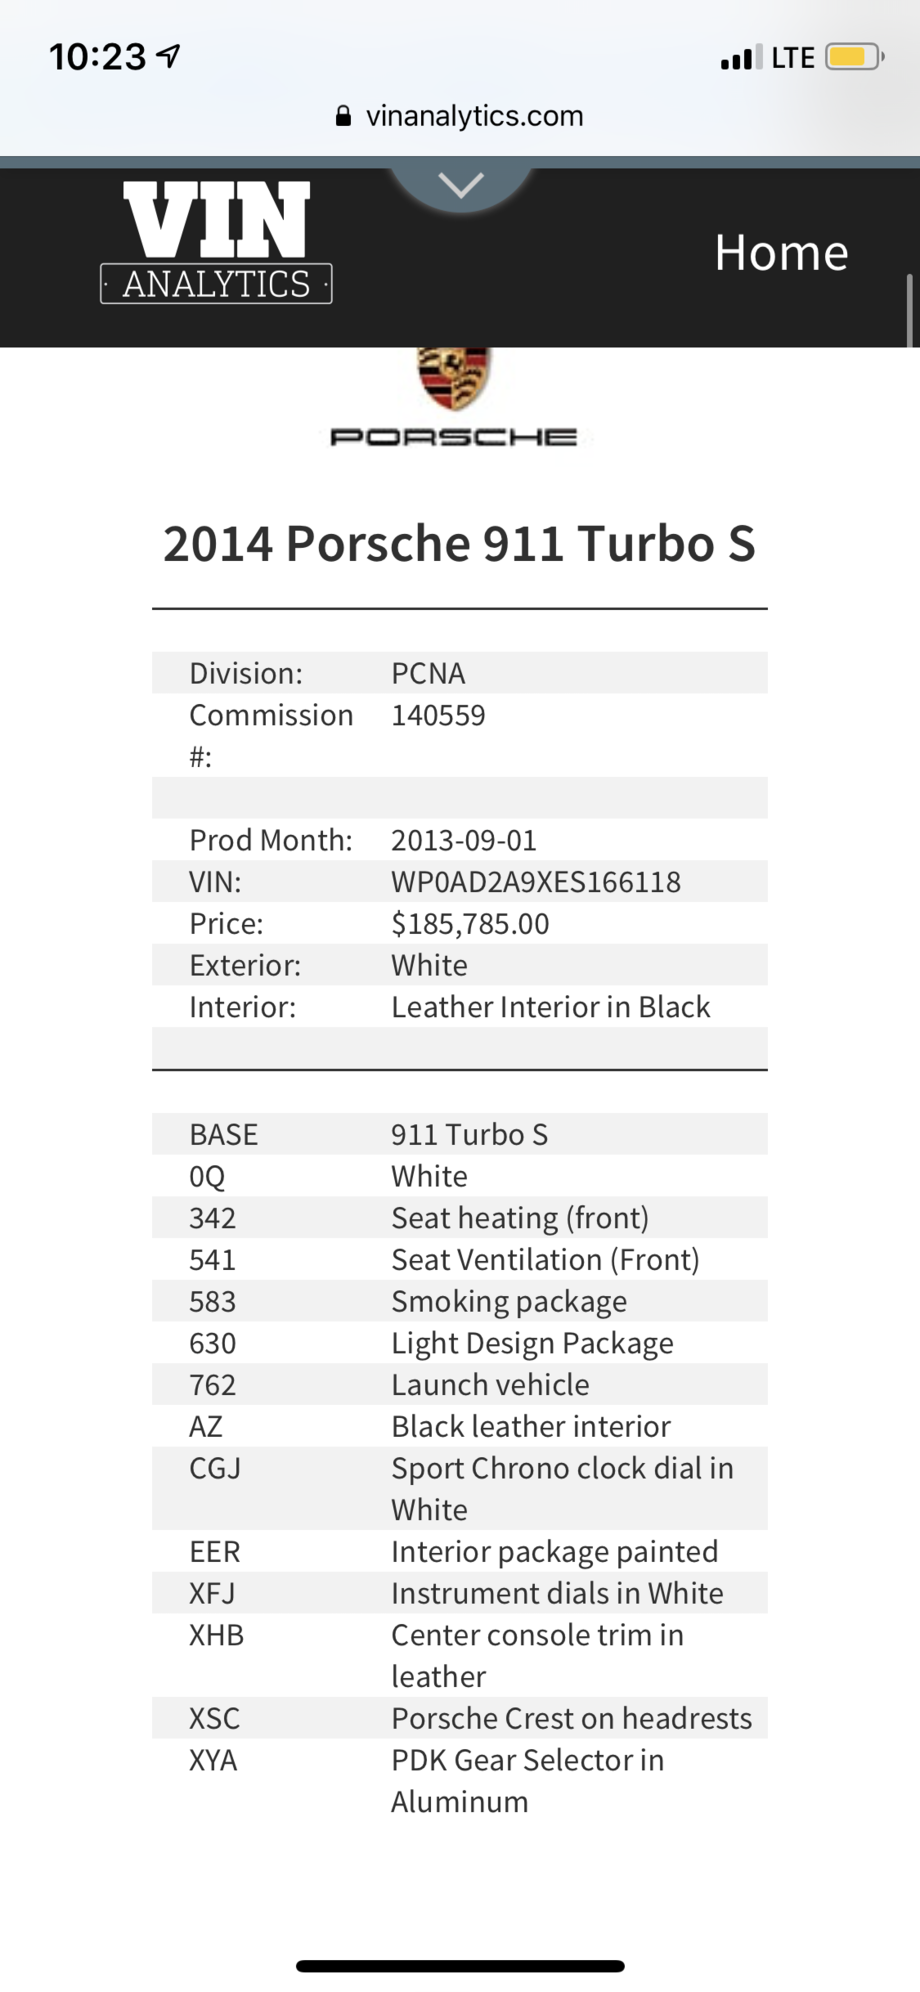 2014 Porsche 911 - CPO 2014 Porsche 911 Turbo S - Used - VIN WP0AD2A9XES166118 - 28,700 Miles - Delmar, DE 19940, United States